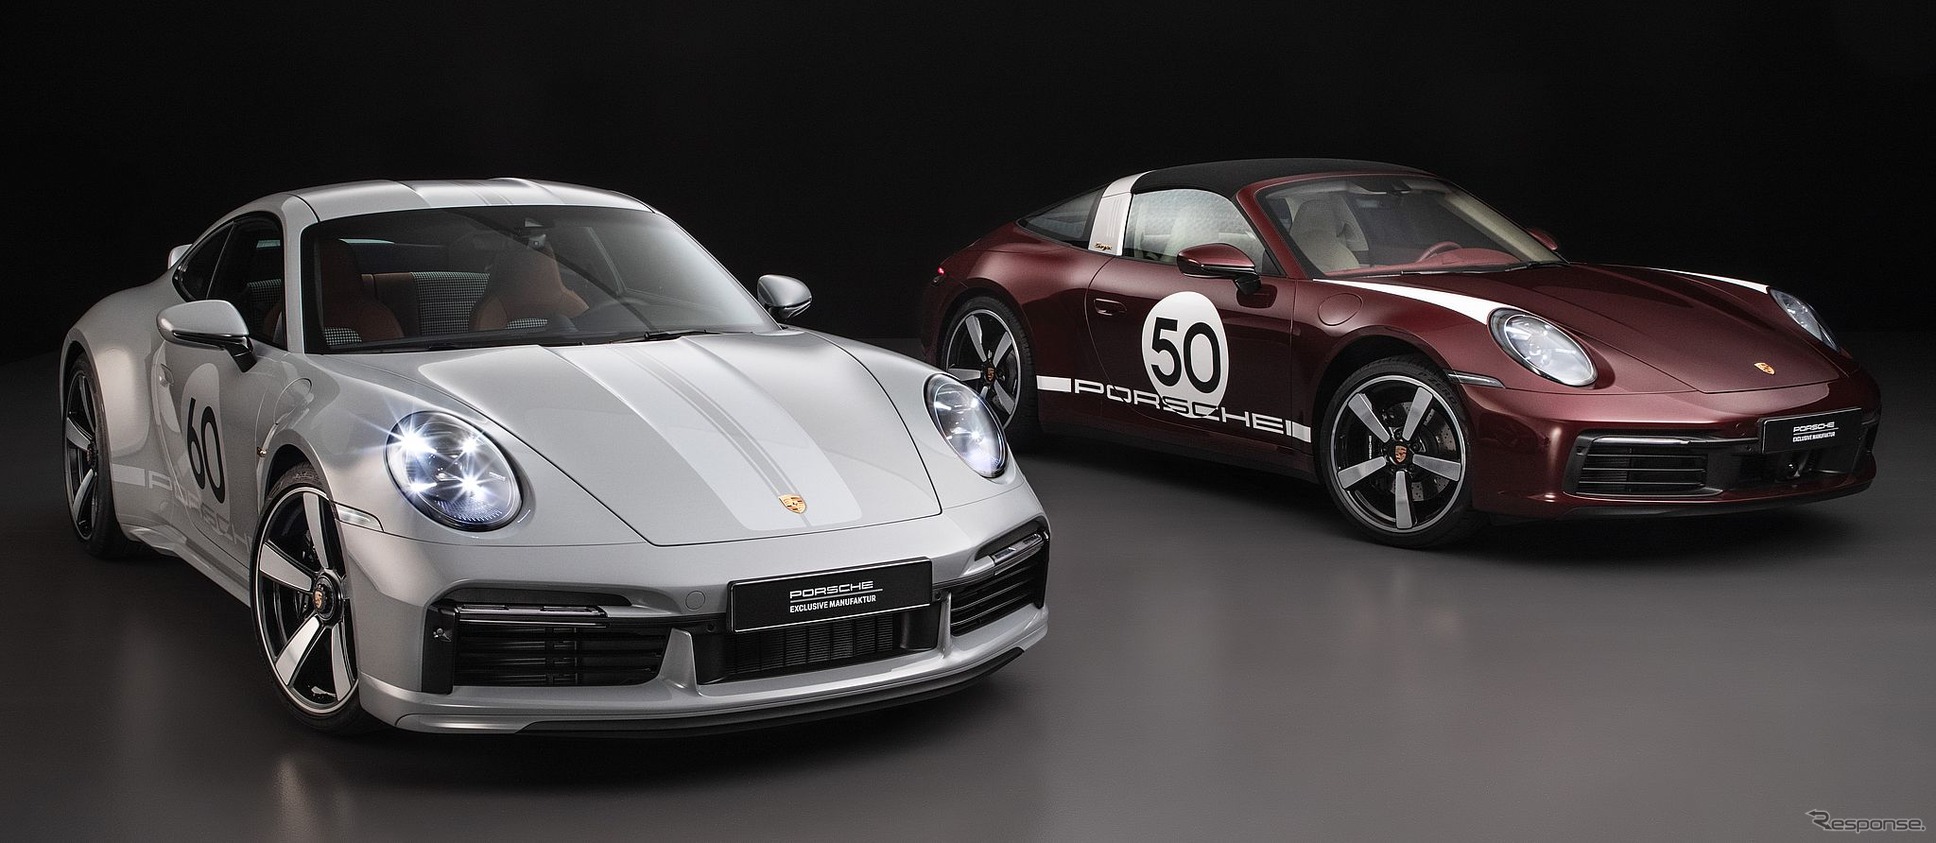 ポルシェ 911 新型に「スポーツクラシック」、ヘリテージデザインモデル第2弾［詳細写真］ | レスポンス（Response.jp）